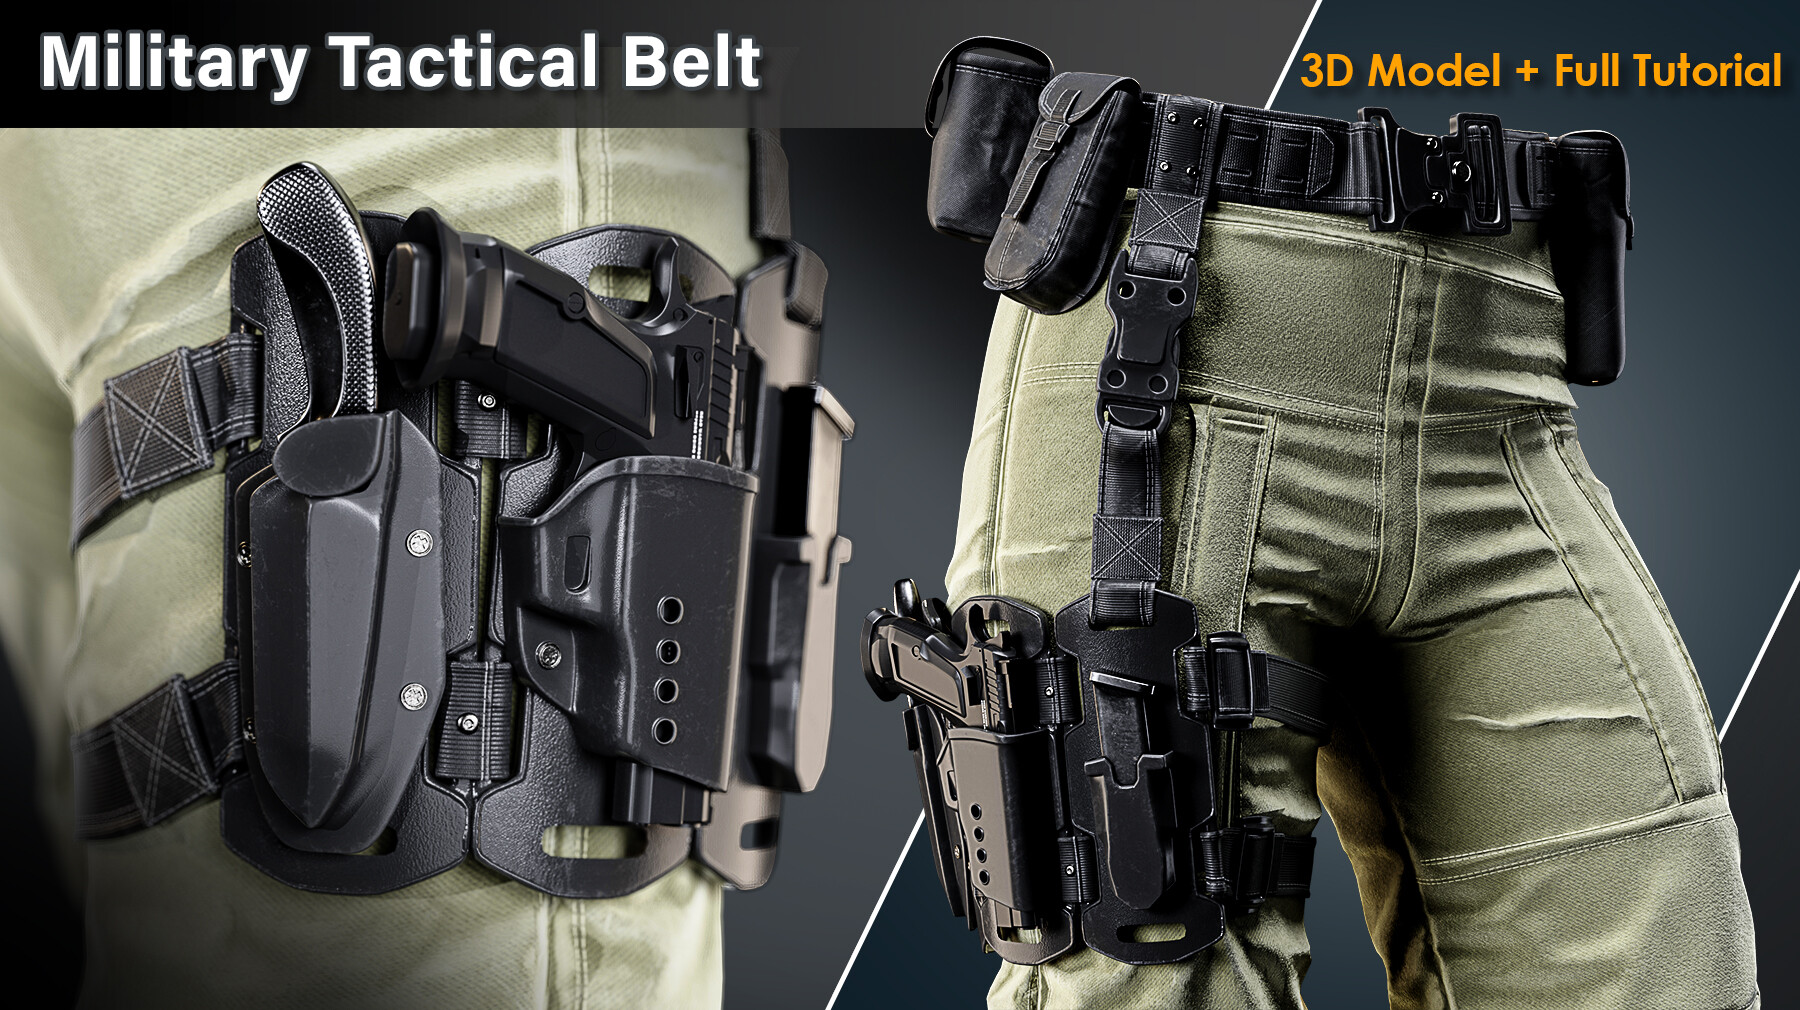 ArtStation - Military Tactical Belt / Full Tutorial+3D Model